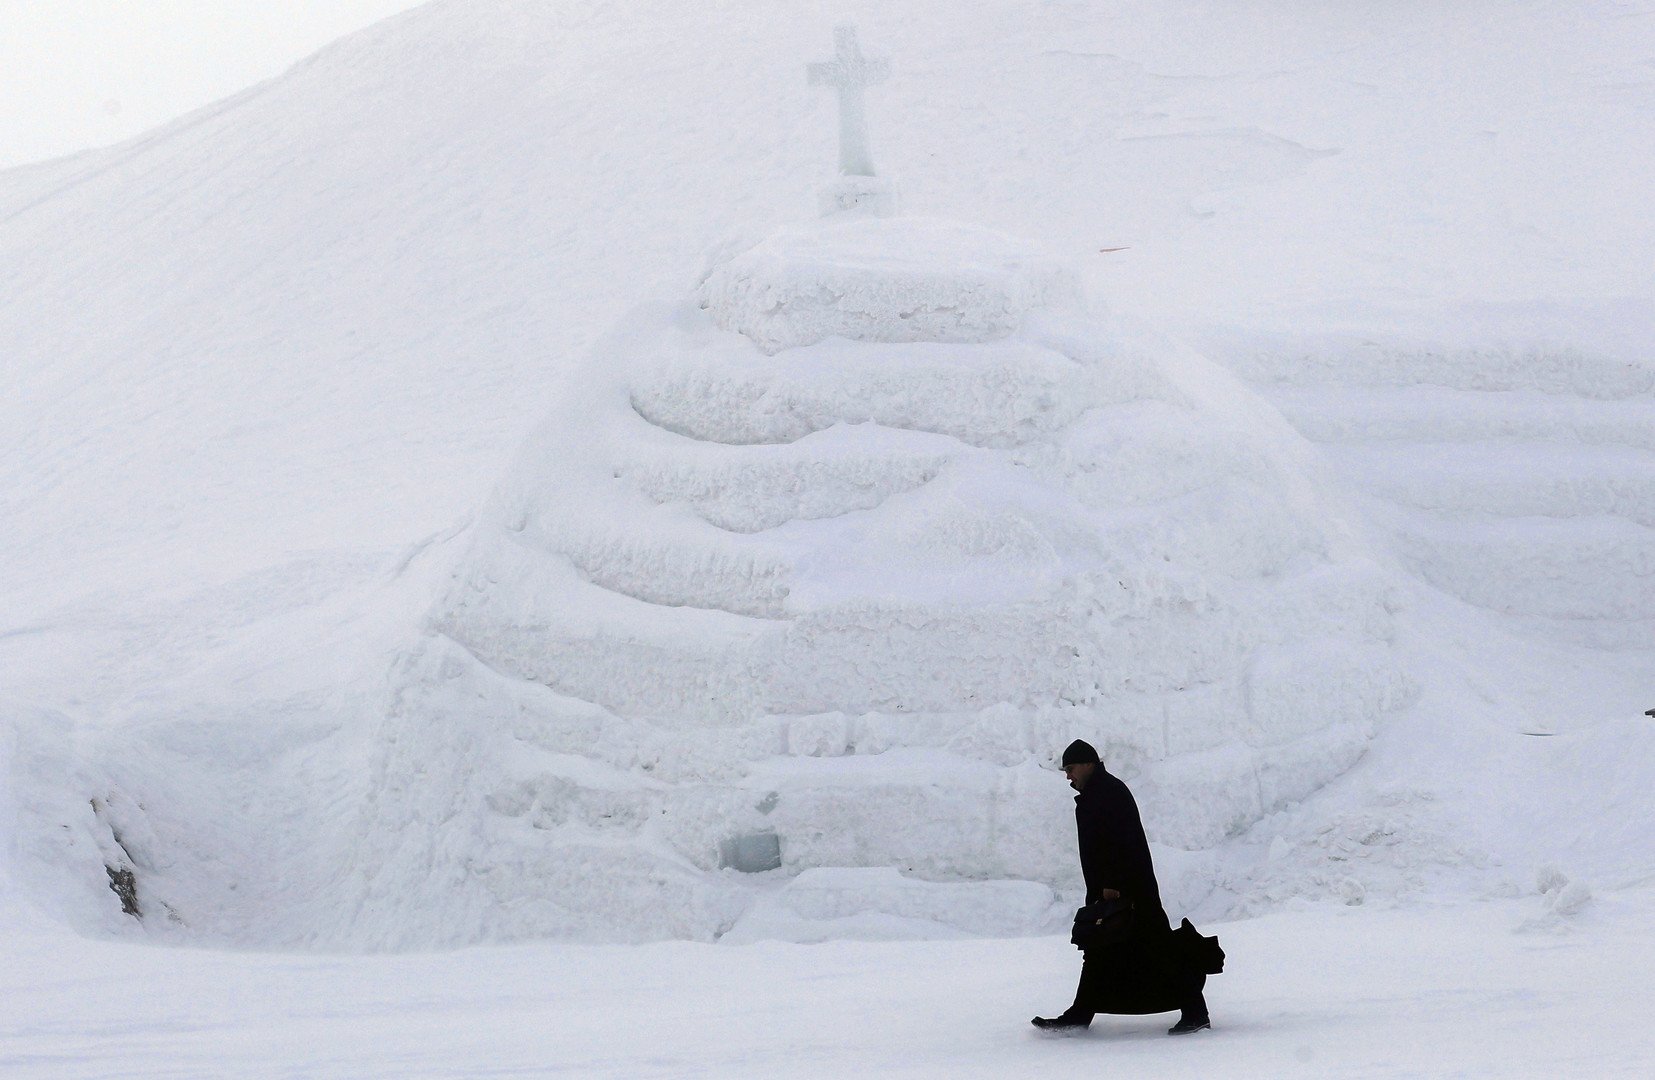  راهب في طريقه لحضور افتتاح كنيسة الجليد على جبال فاراغاس، 29 يناير 2015